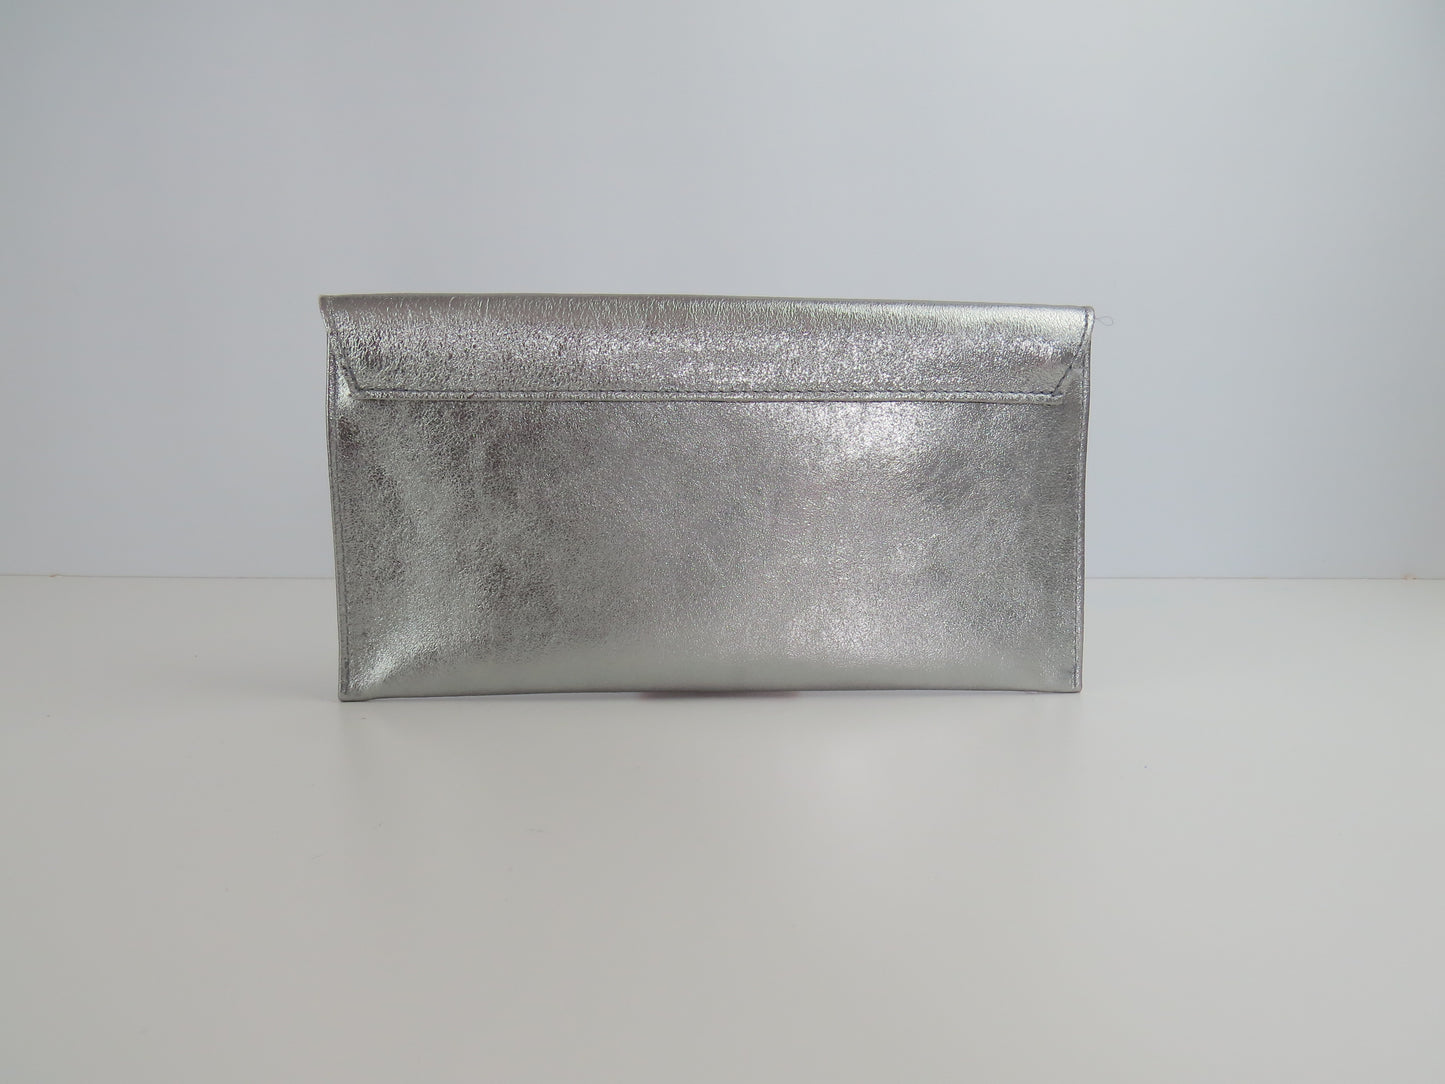 Metallic Pewter envelope clutch bag